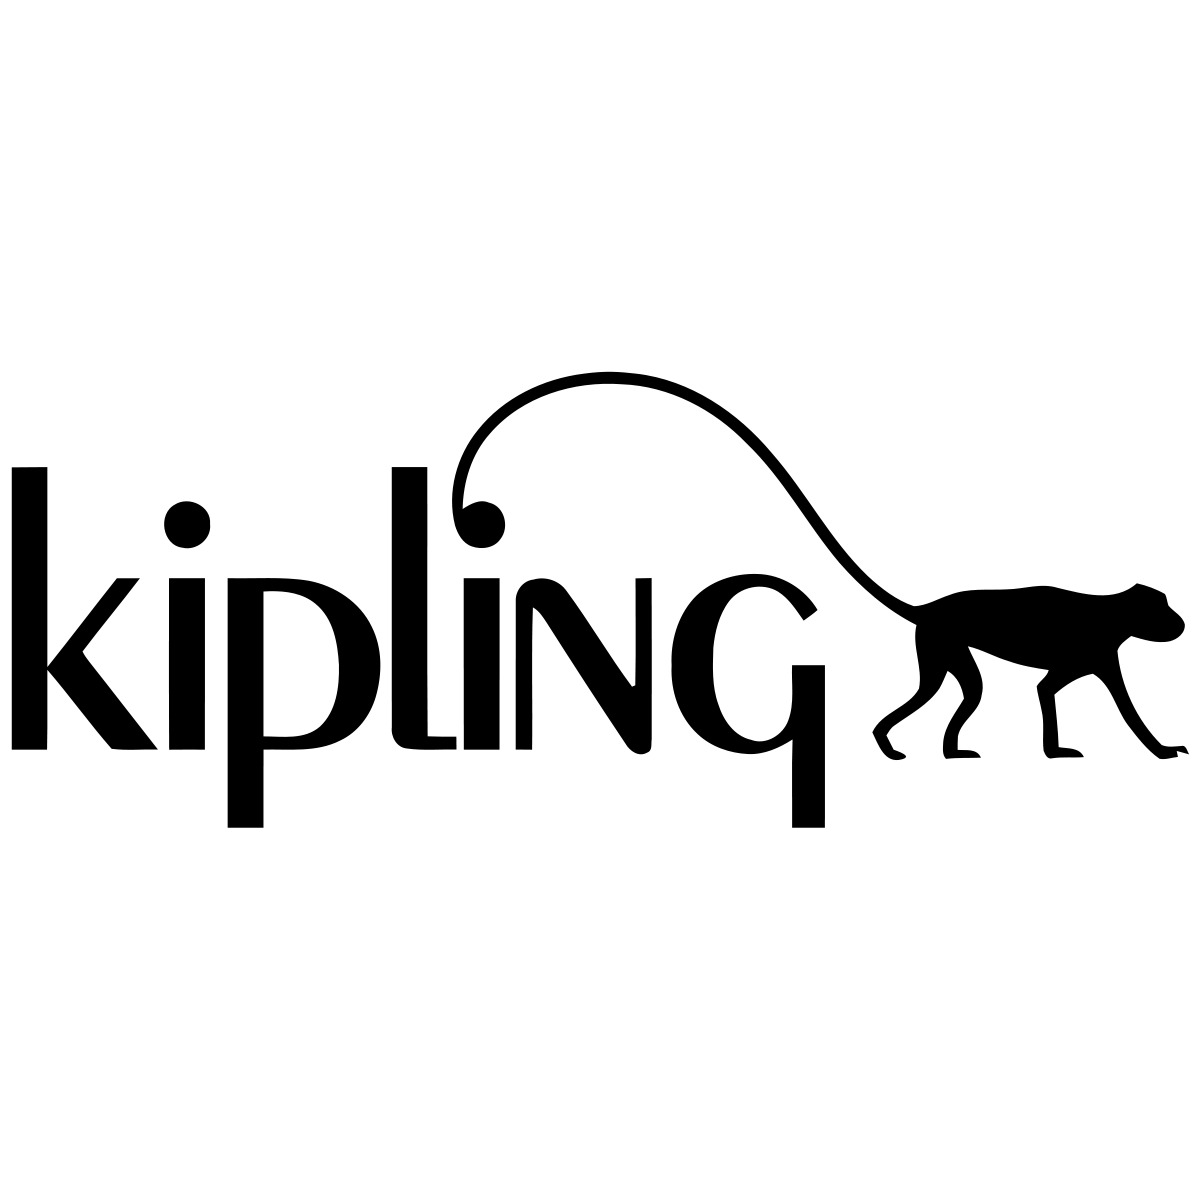 ติดตั้งกันสาดผ้าใบพร้อมเขียนโลโก้ที่ร้าน Kipling 